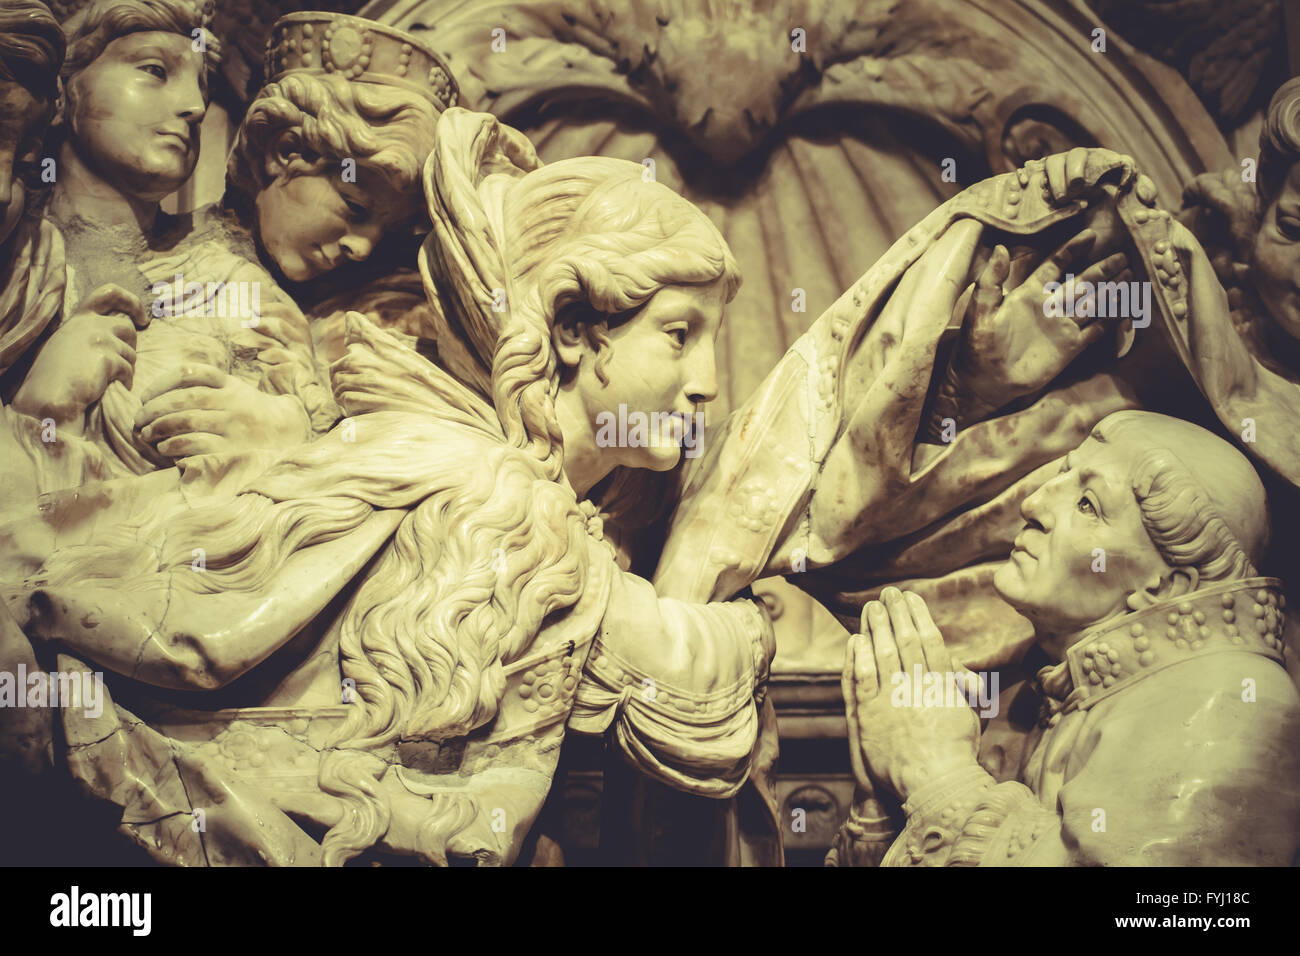 La religion des sculptures, des anges gothique romantique Banque D'Images